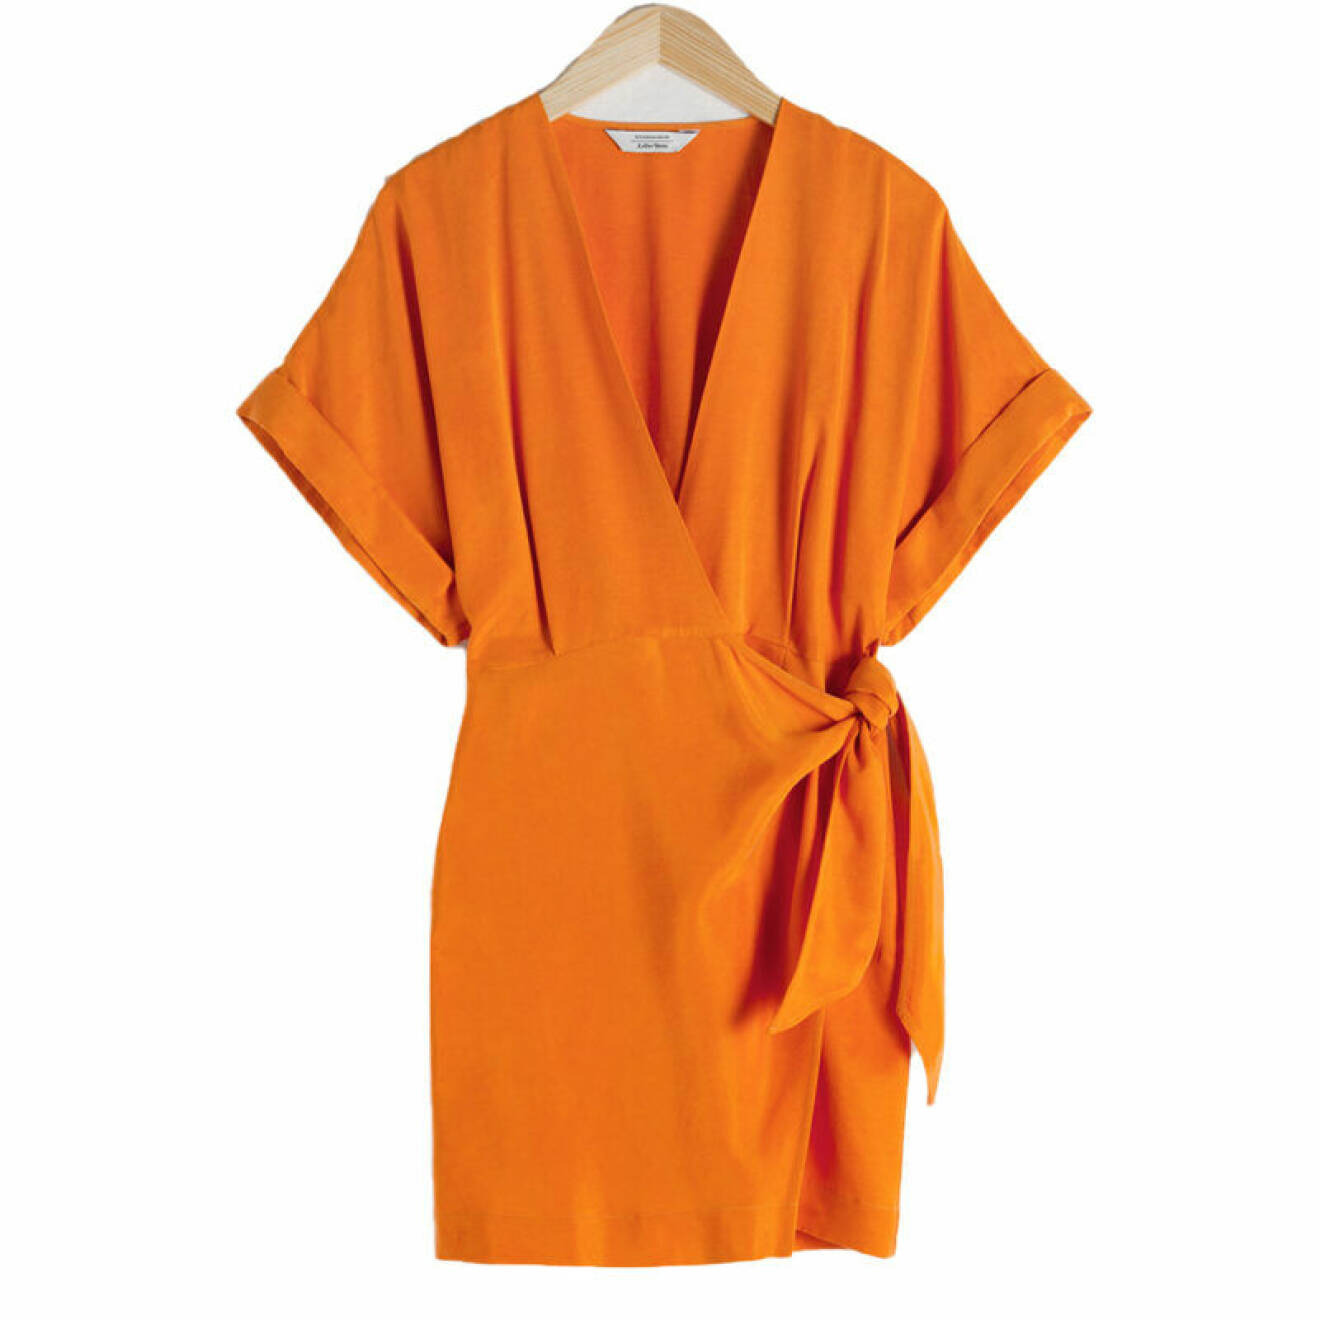 Omlottklänning i oranget till coctailpartyt